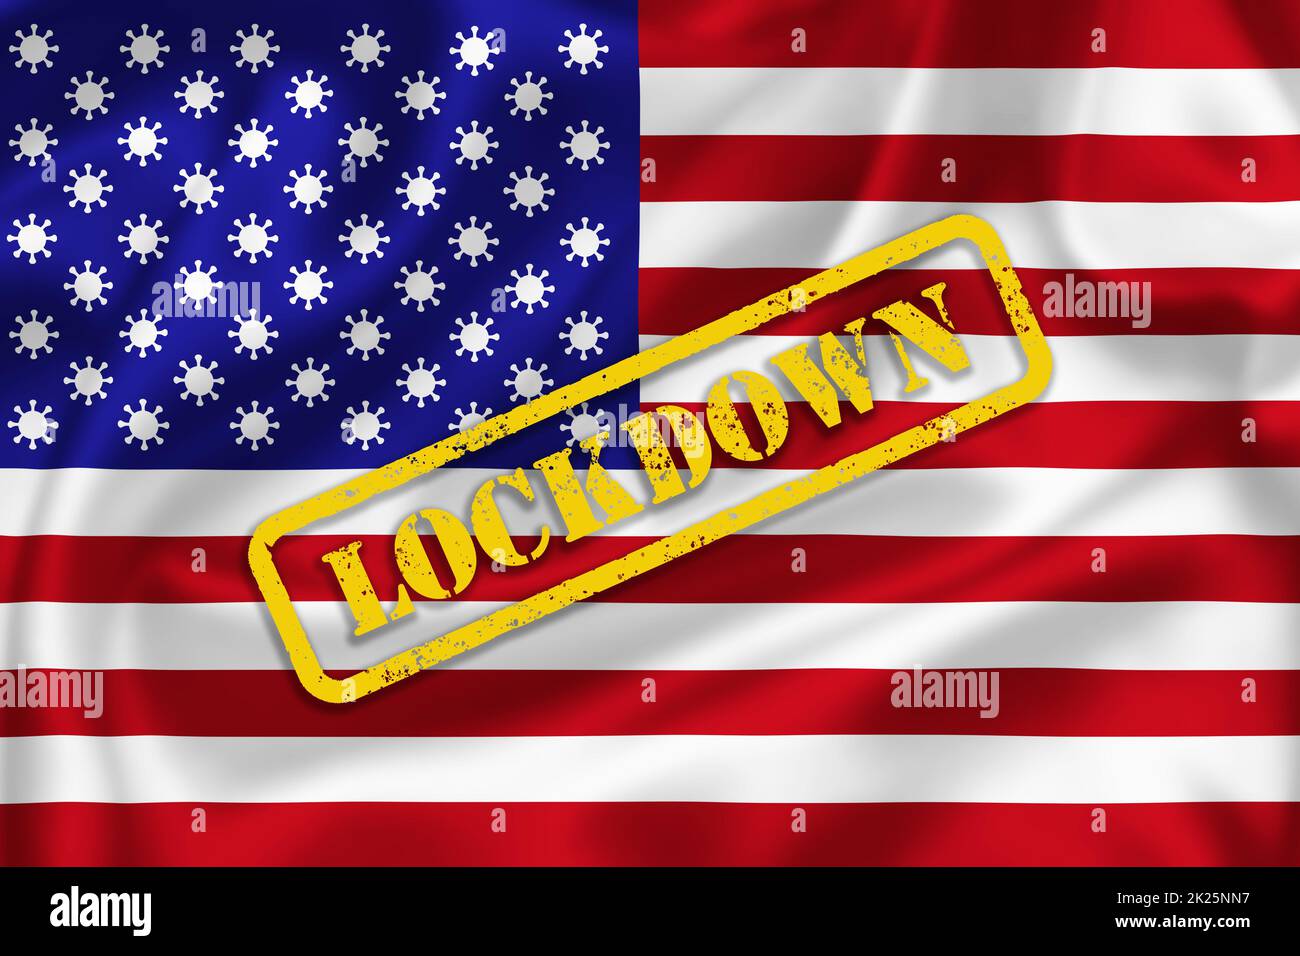 Illustrazione della bandiera degli Stati Uniti d'America con i segni del coronavirus invece del testo di blocco delle stelle. Illustrazione della pandemia di Covid-19 negli Stati Uniti. Foto Stock